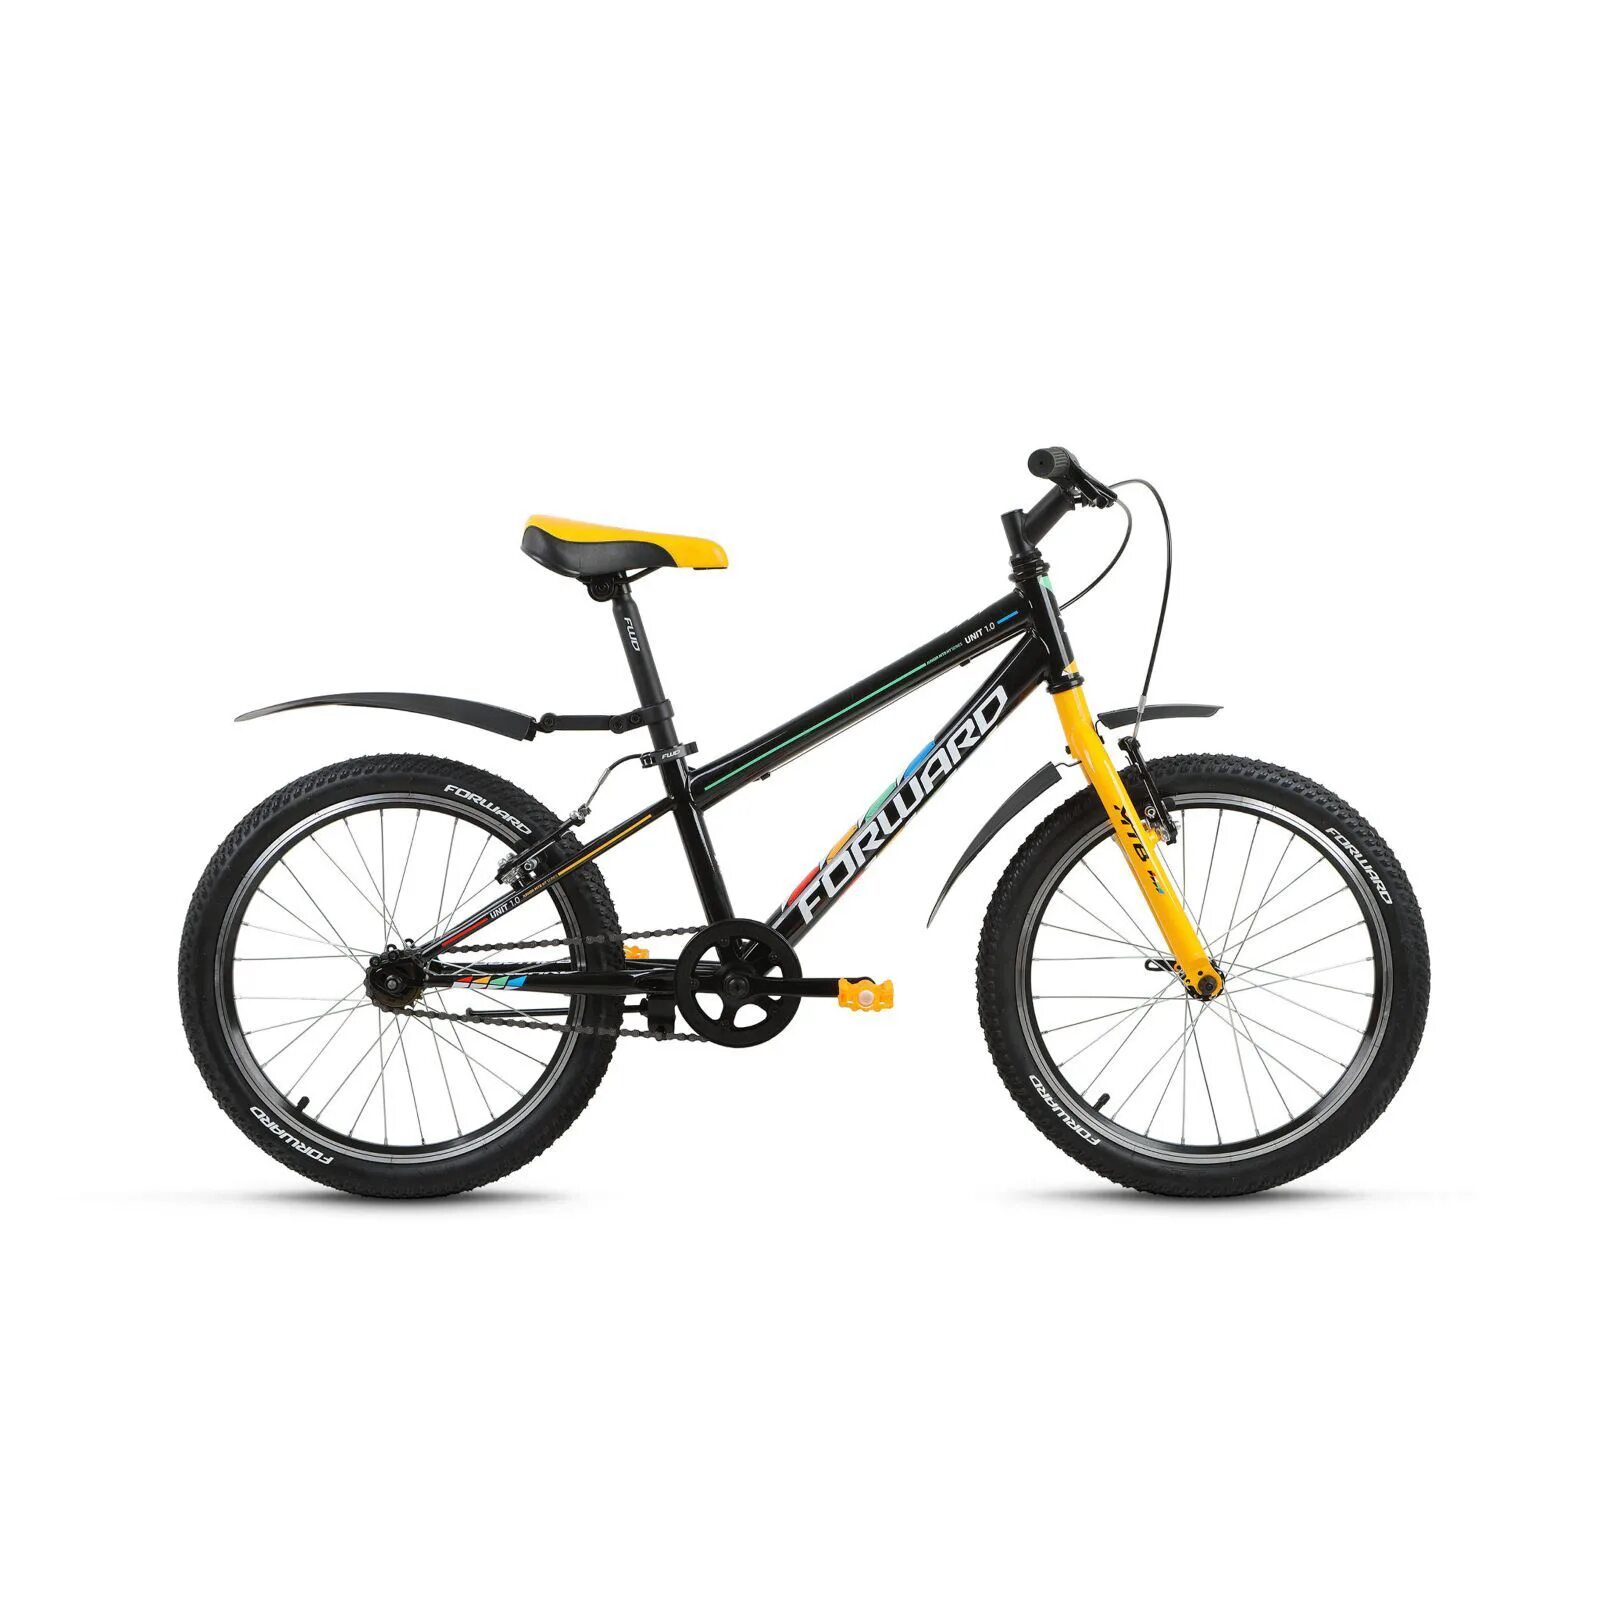 Велосипед форвард Юнит 1.0. Подростковый горный (MTB) велосипед forward Rise 20 2.0 (2019). Велосипед format 7413. Велосипед 20" Altair MTB HT 20.